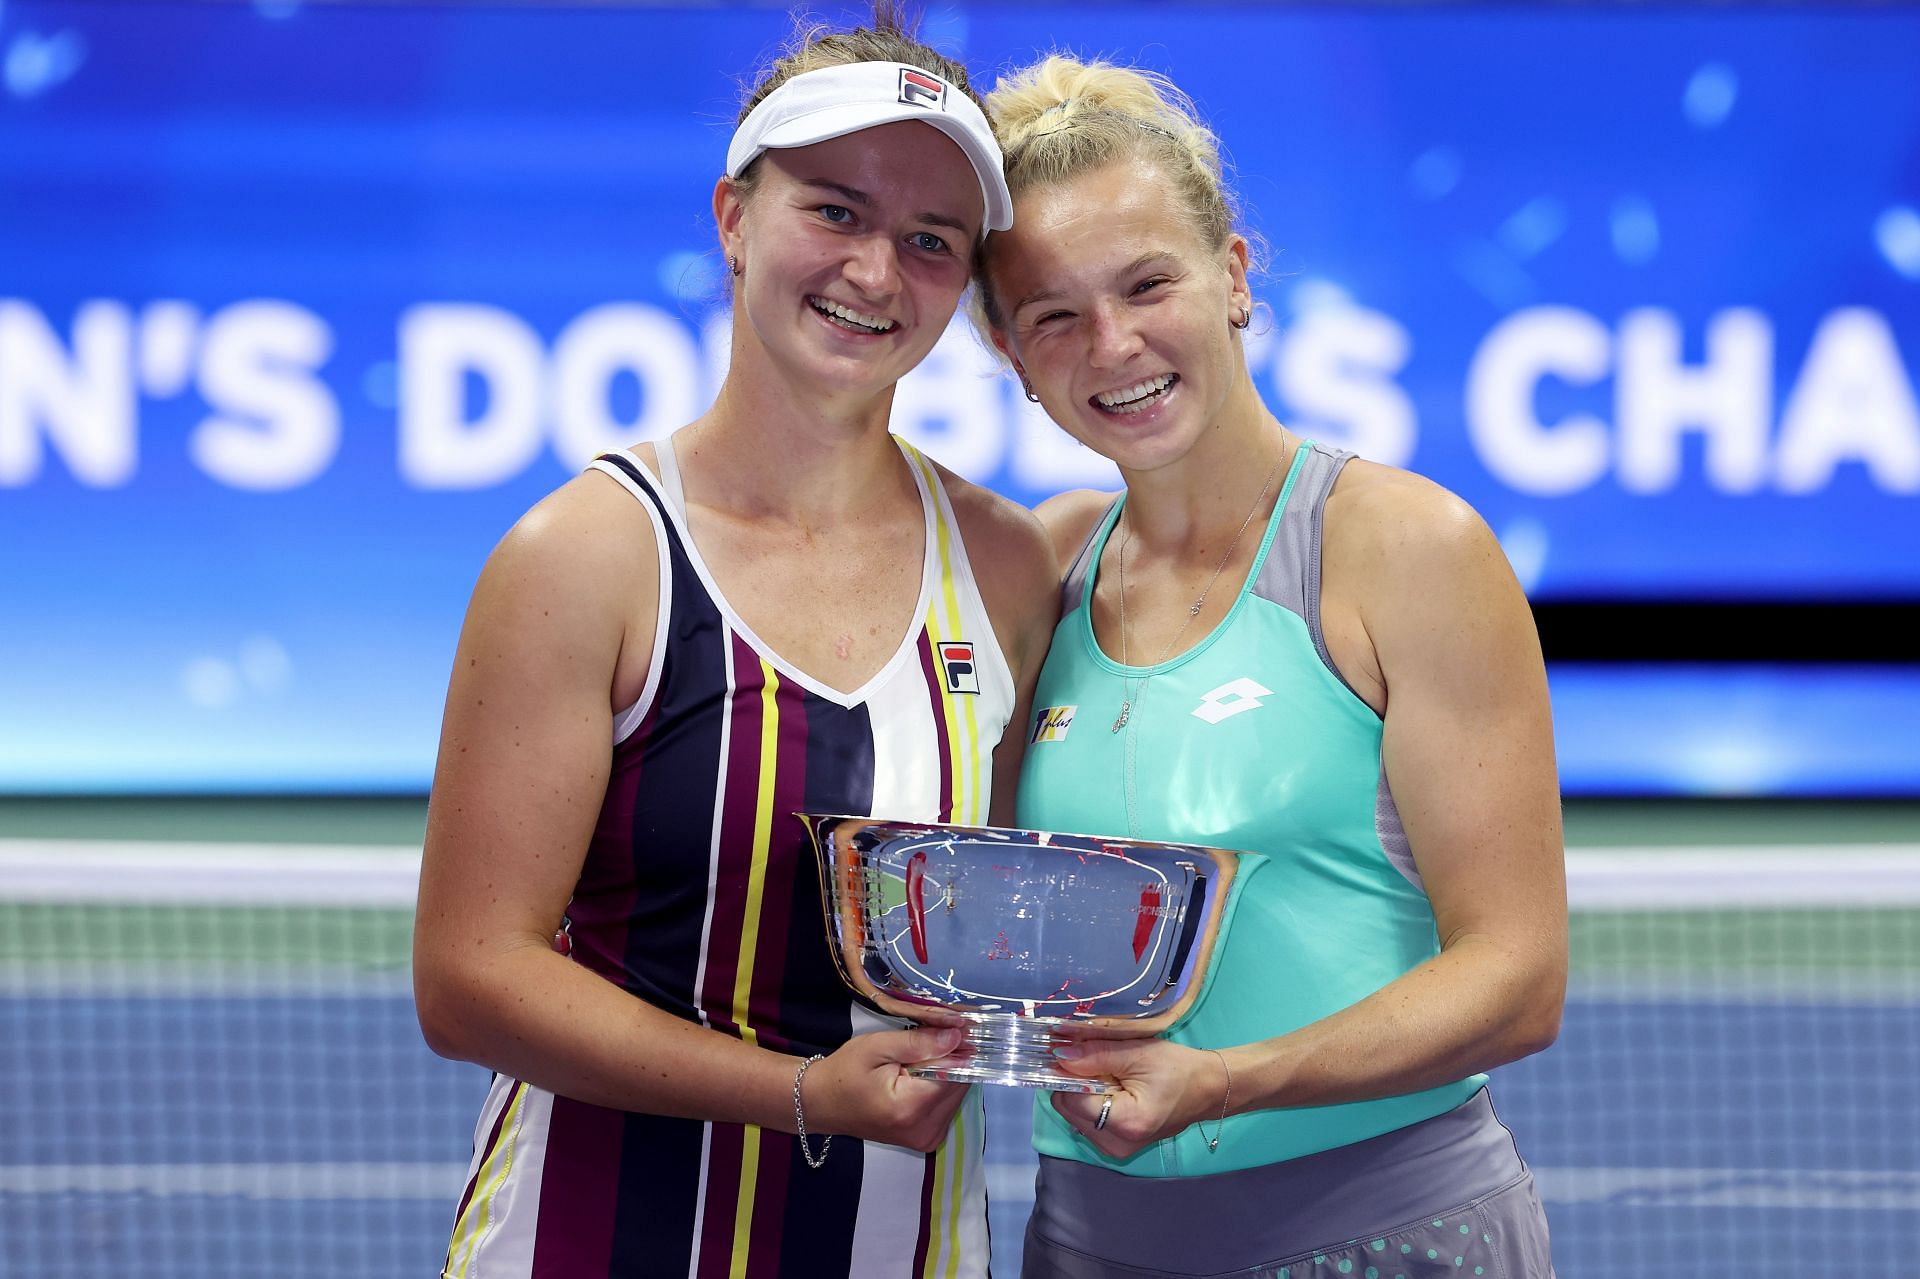 The Czech girls won their first US Open title.